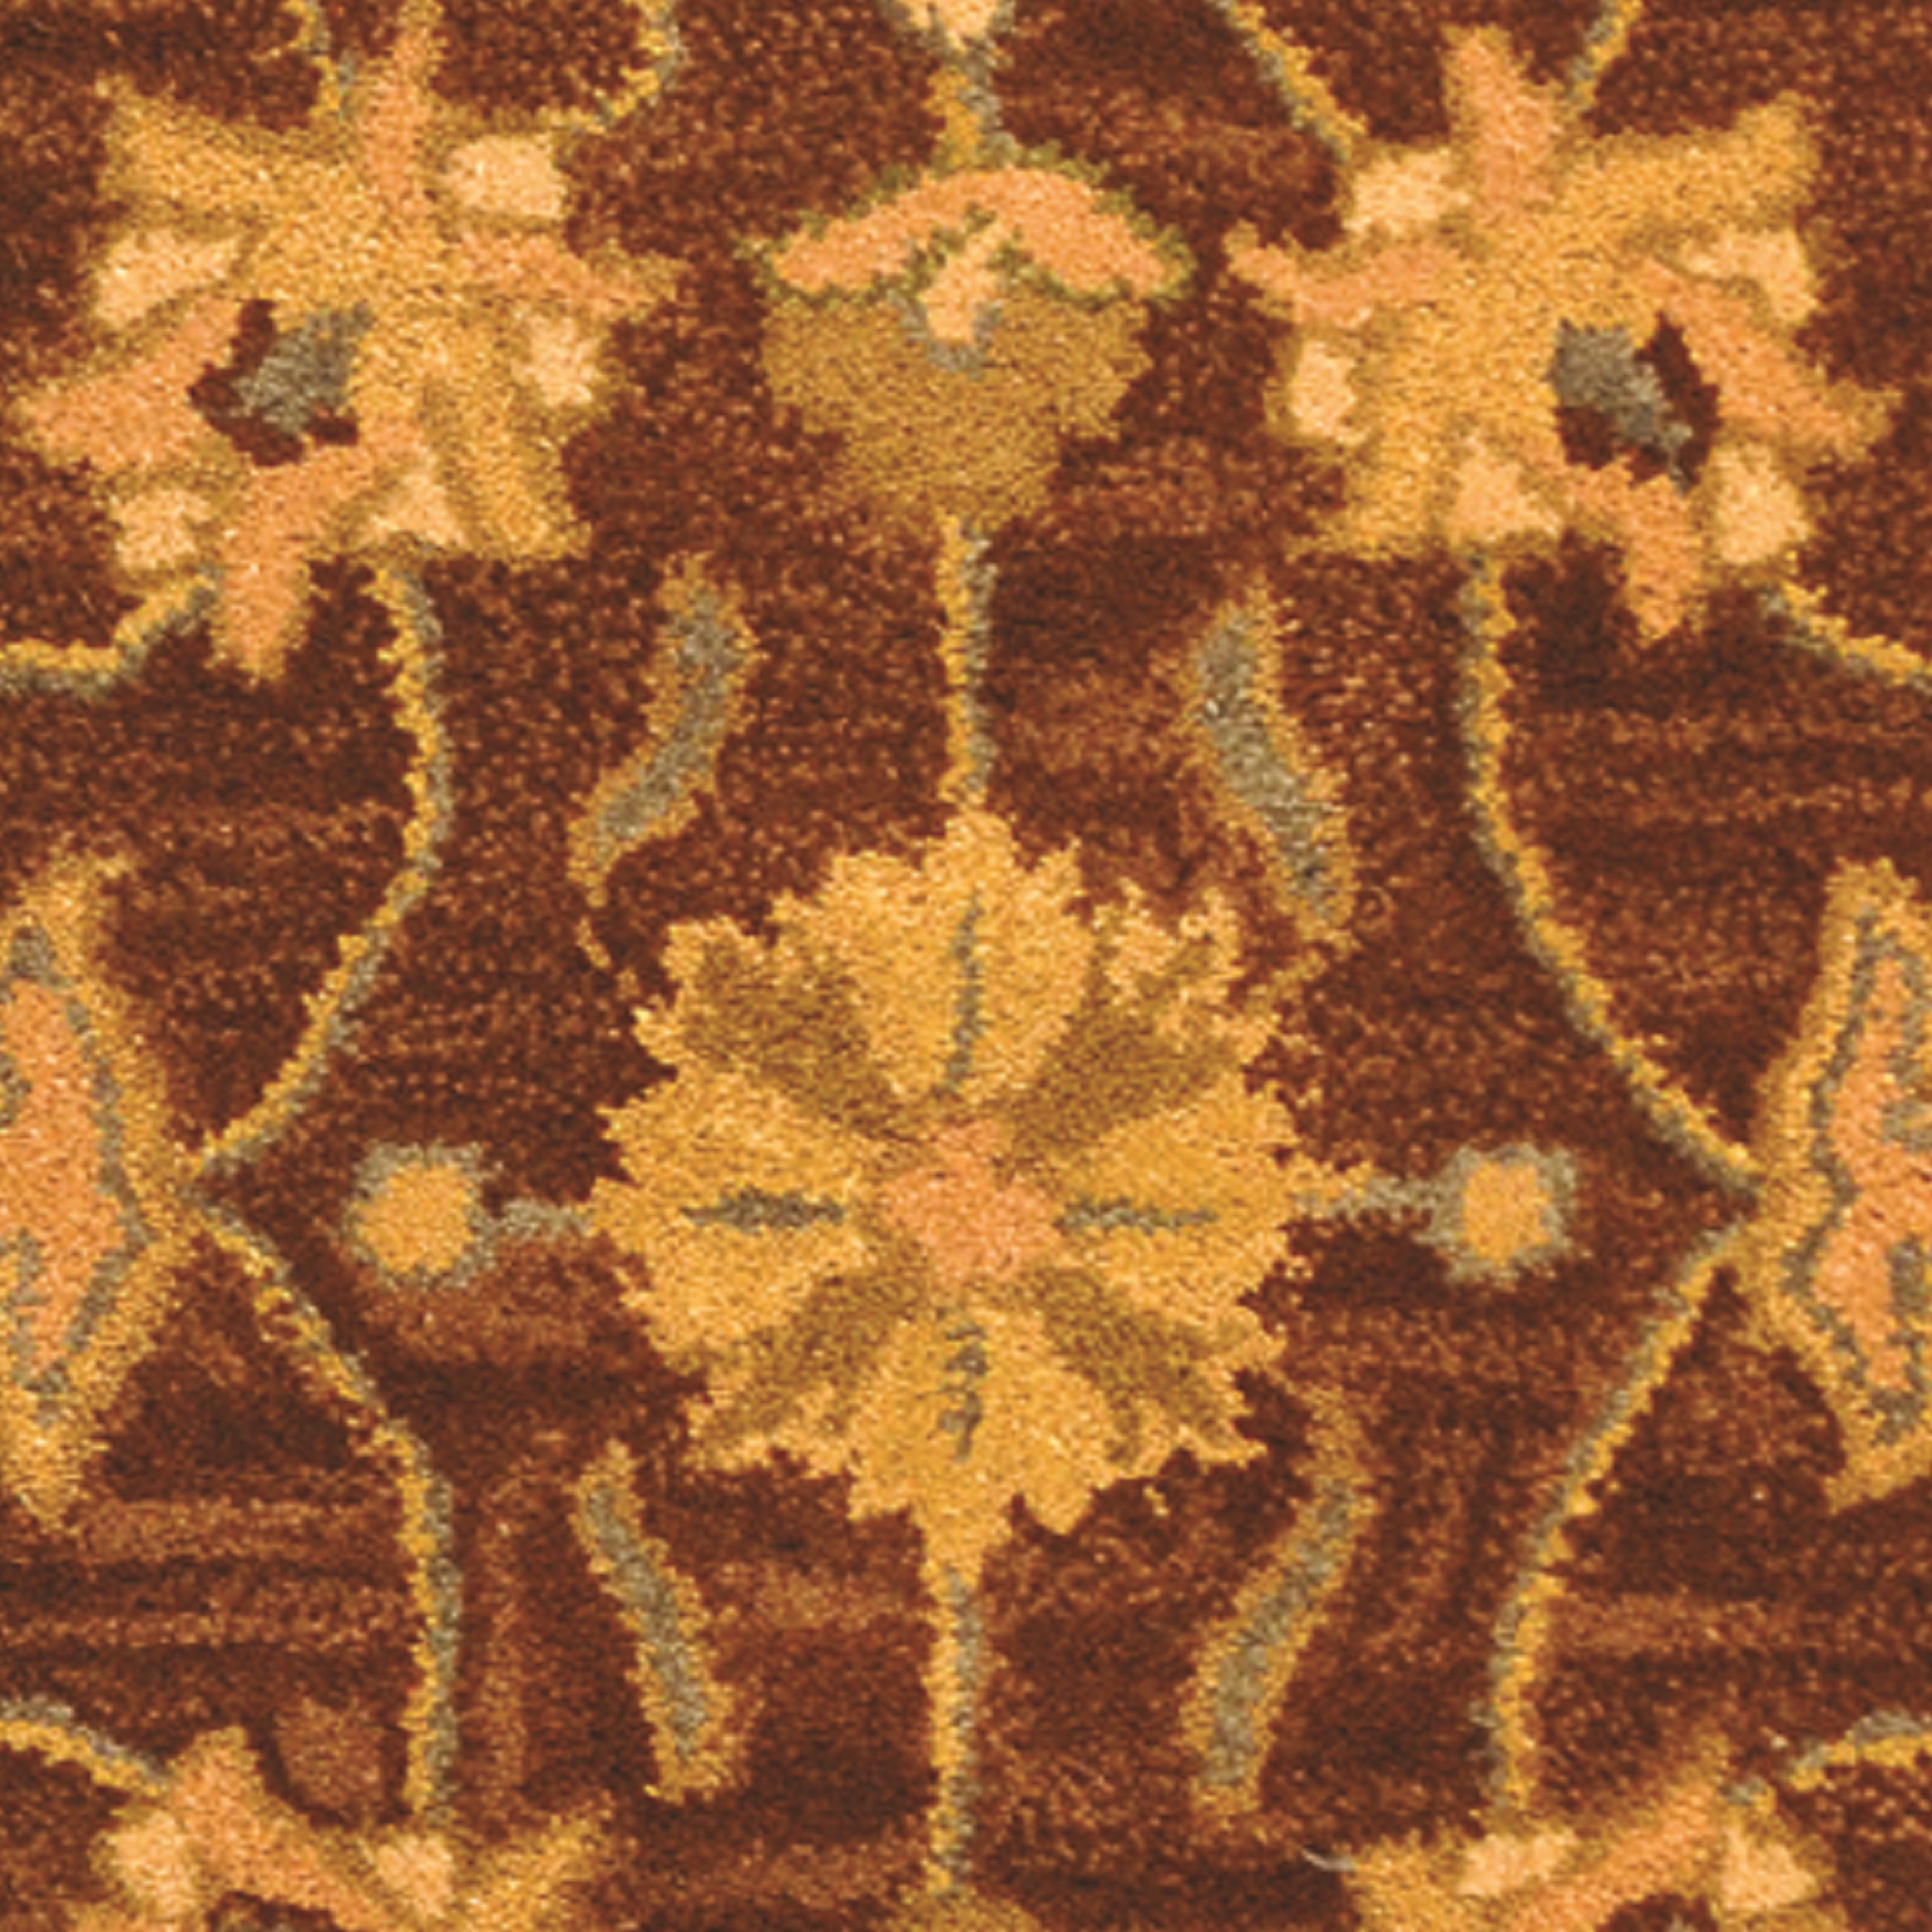 SAFAVIEH Heritage Regis Traditional Wool Runner Rug, Brown/Blue, 2'3" x 8' - image 3 of 4